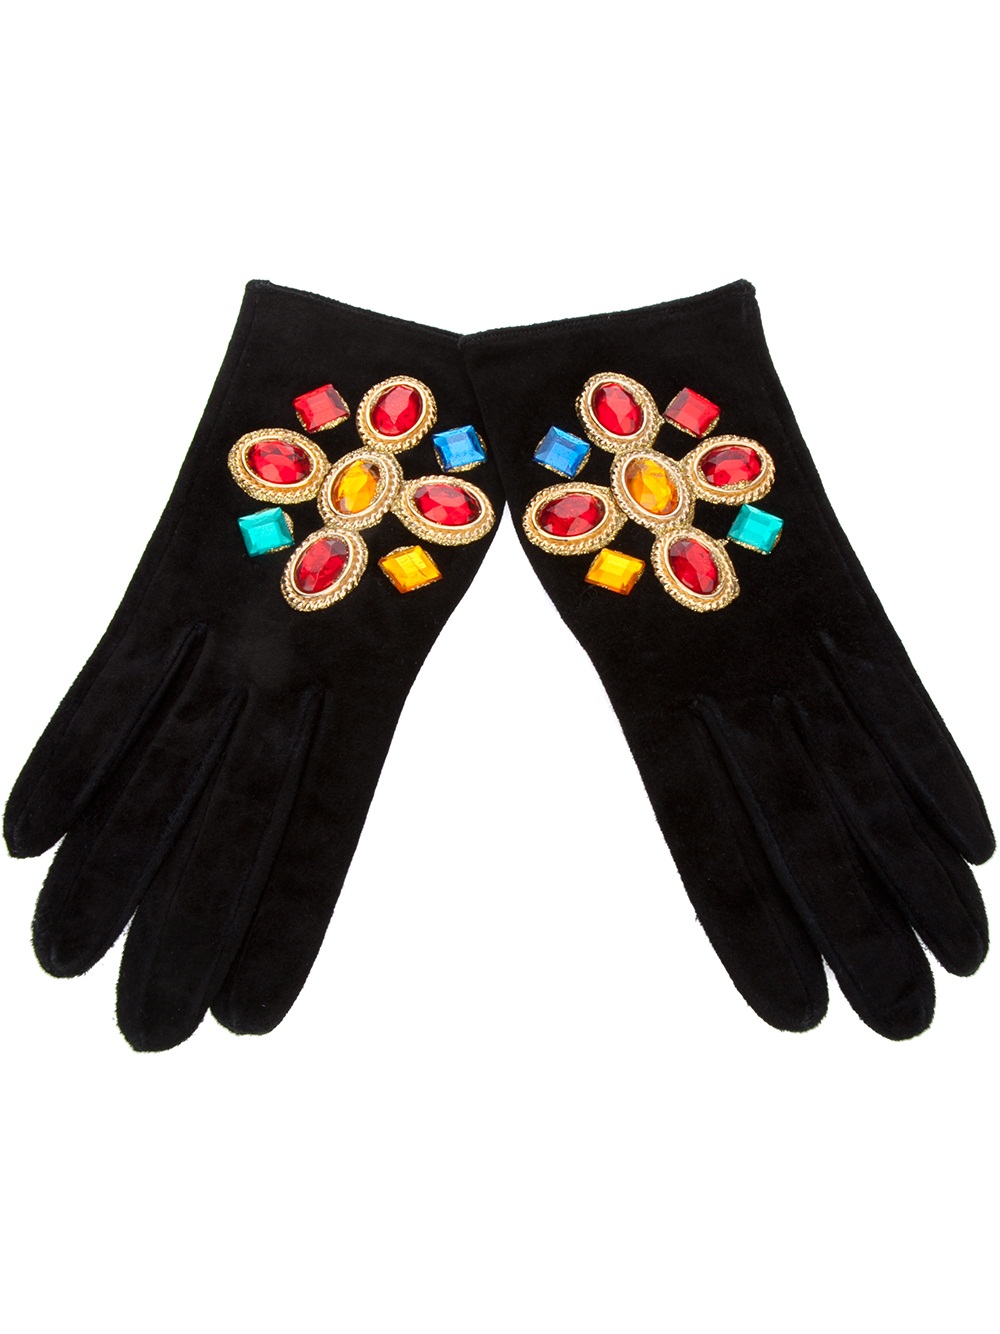 Glamour Gloves